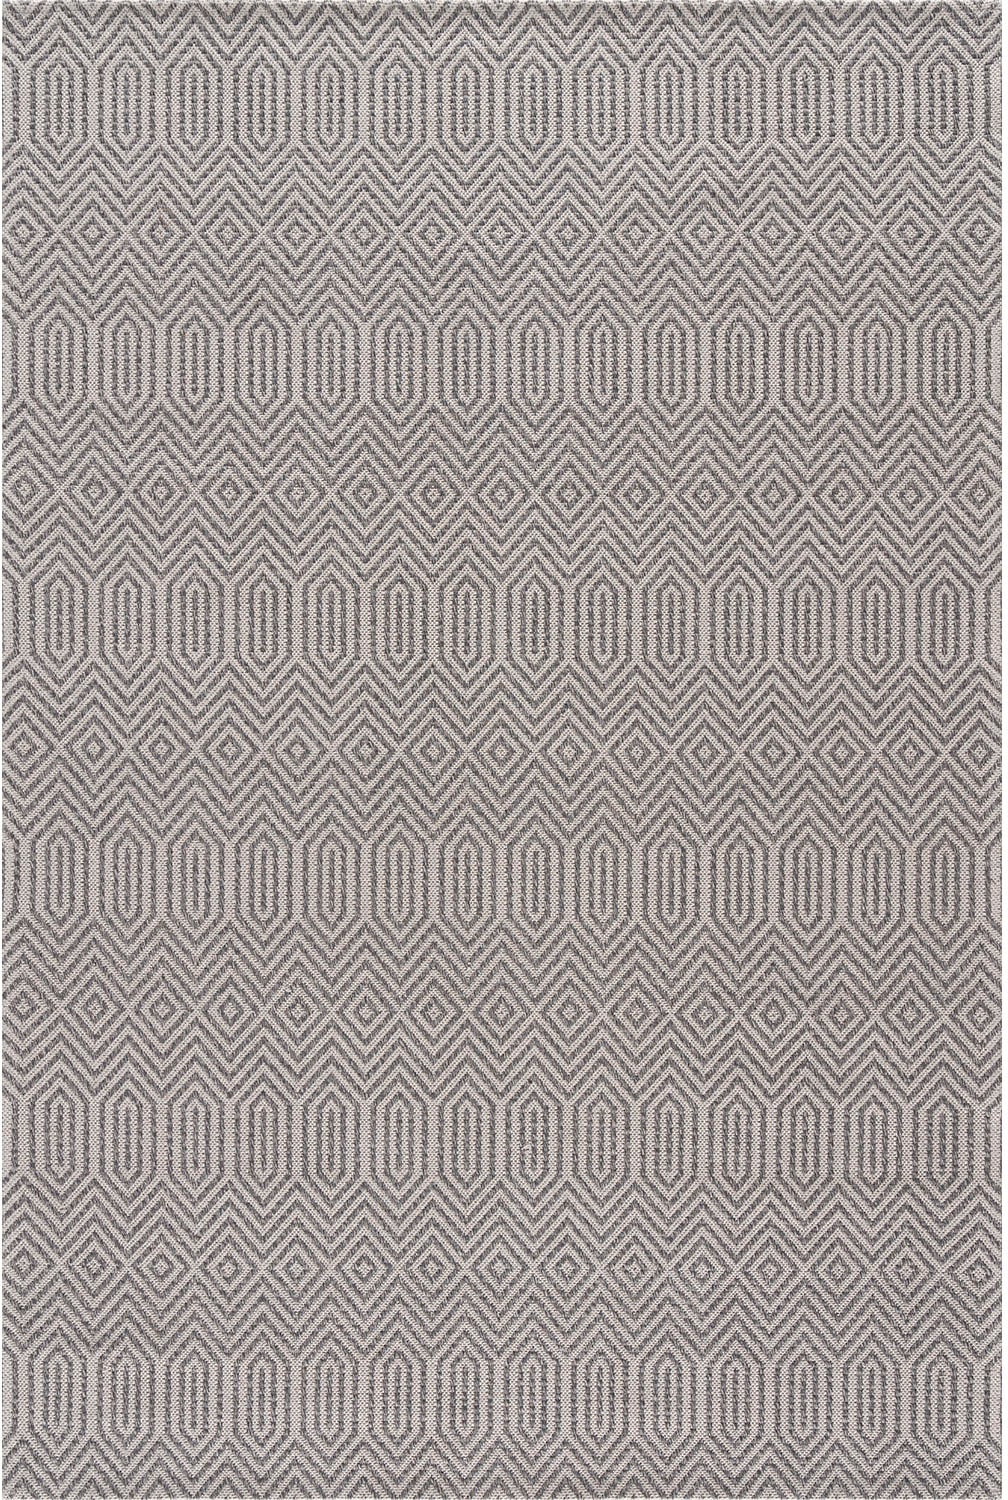 Carpet City Teppich Rauten-Optik, »Cotton«, Baumwolle, Flachgewebe, 100% rechteckig, günstig! Pflegeleicht